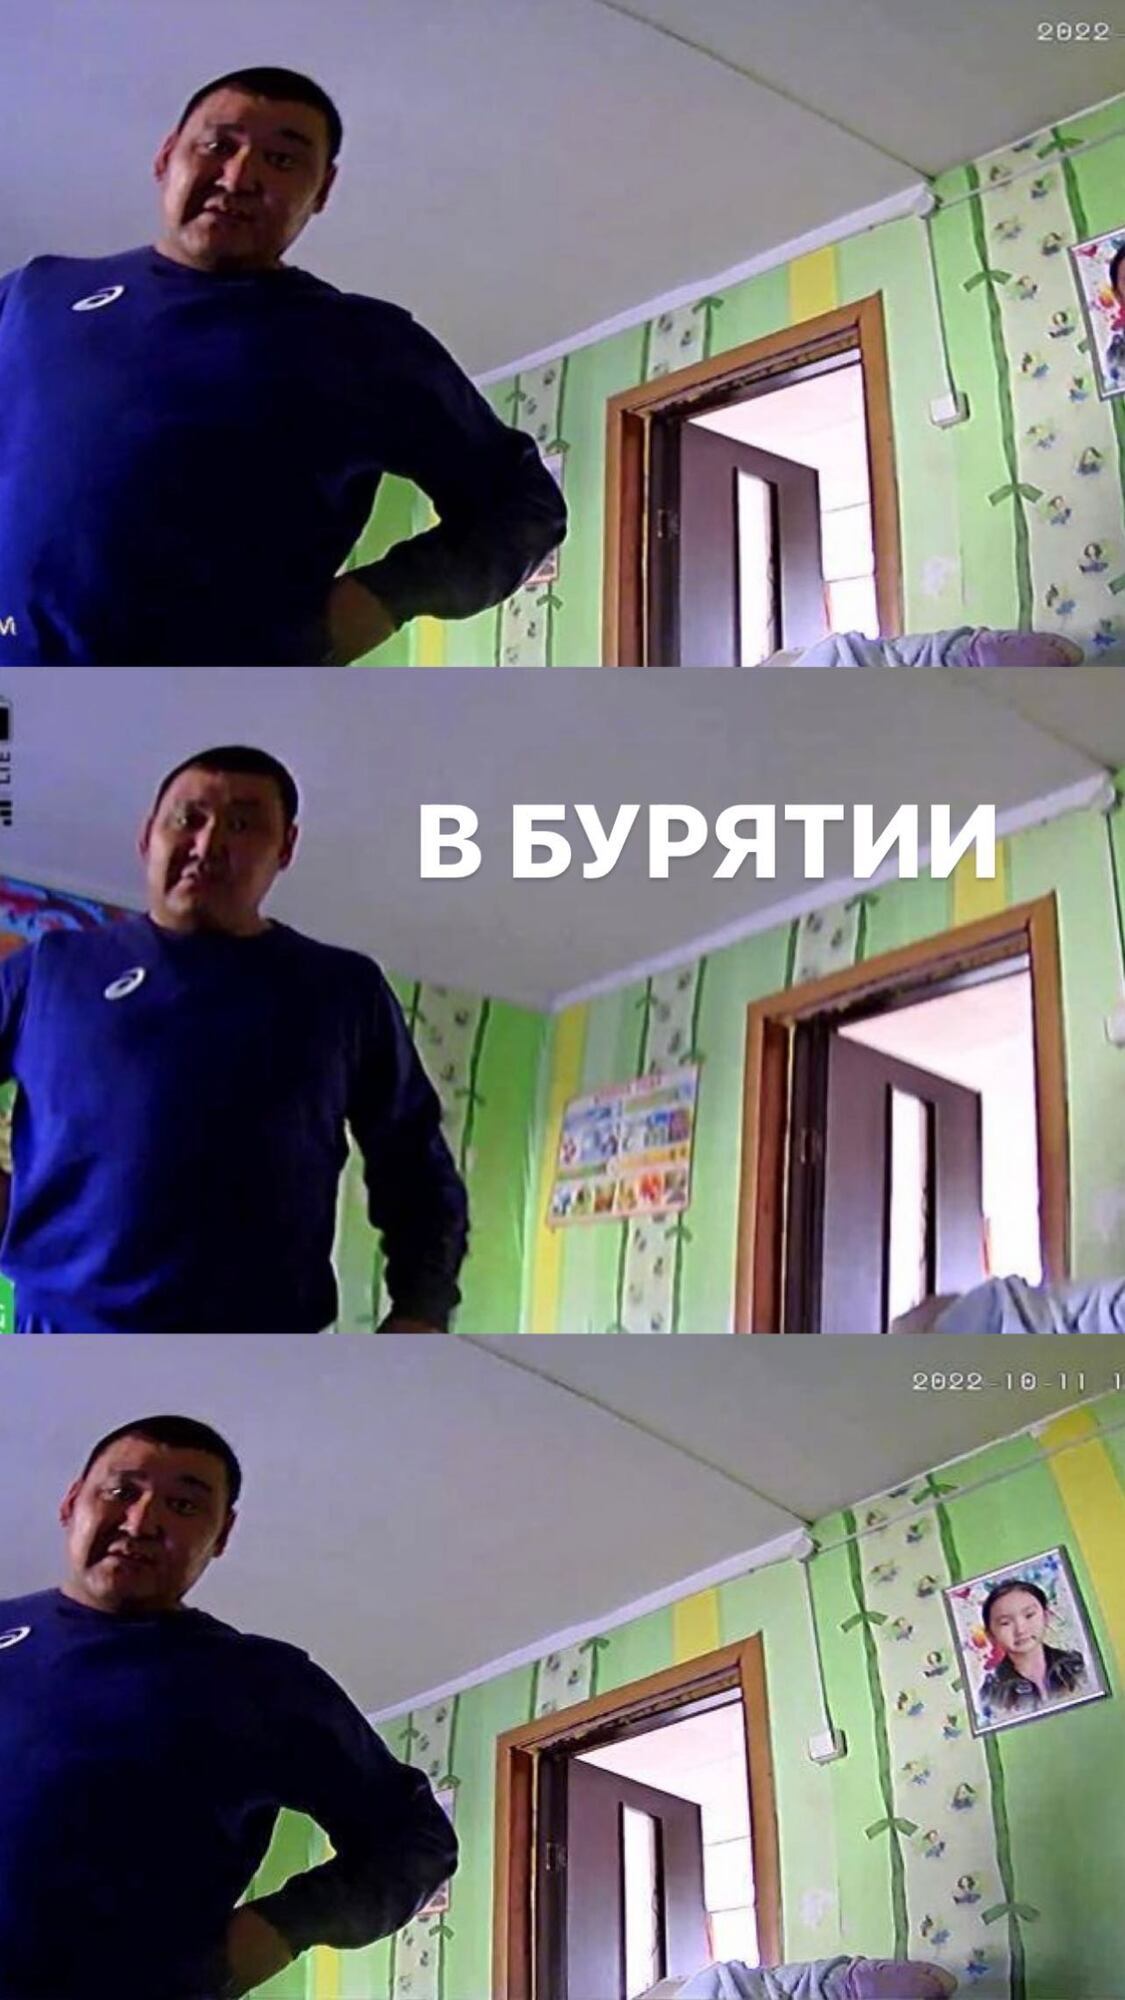 Мародерство оккупантов - военный РФ установил украденную в Украине камеру в  своем доме в Бурятии - ее владелец смотрит трансляцию - фото и видео |  OBOZ.UA